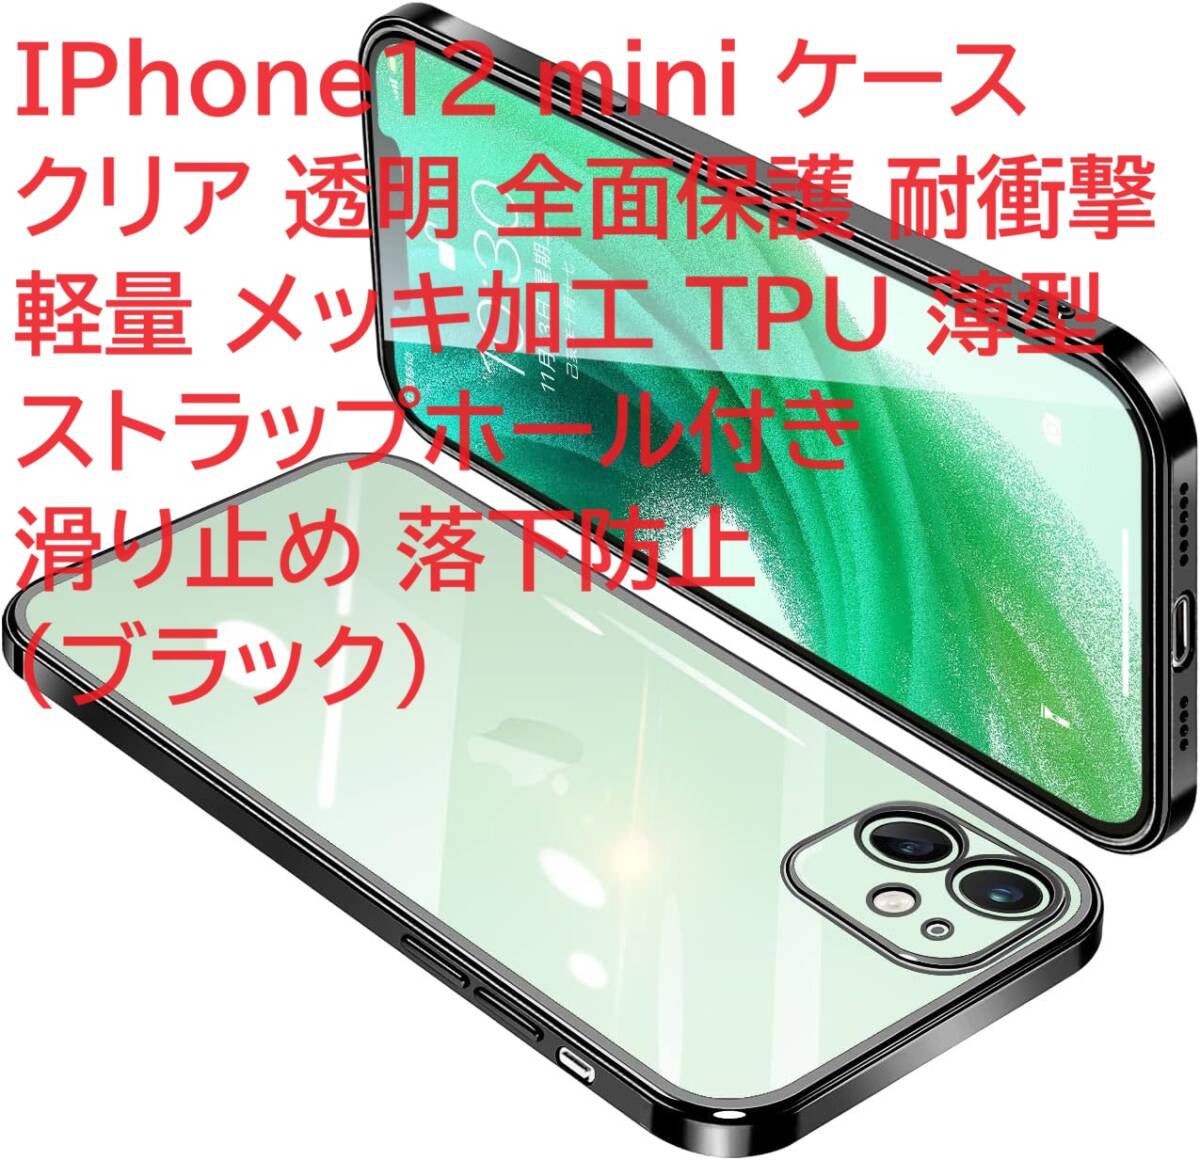 IPhone12 mini ケース クリア 透明 全面保護 耐衝撃 軽量 メッキ加工 TPU 薄型 ストラップホール付き 滑り止め 落下防止（ブラック）の画像1